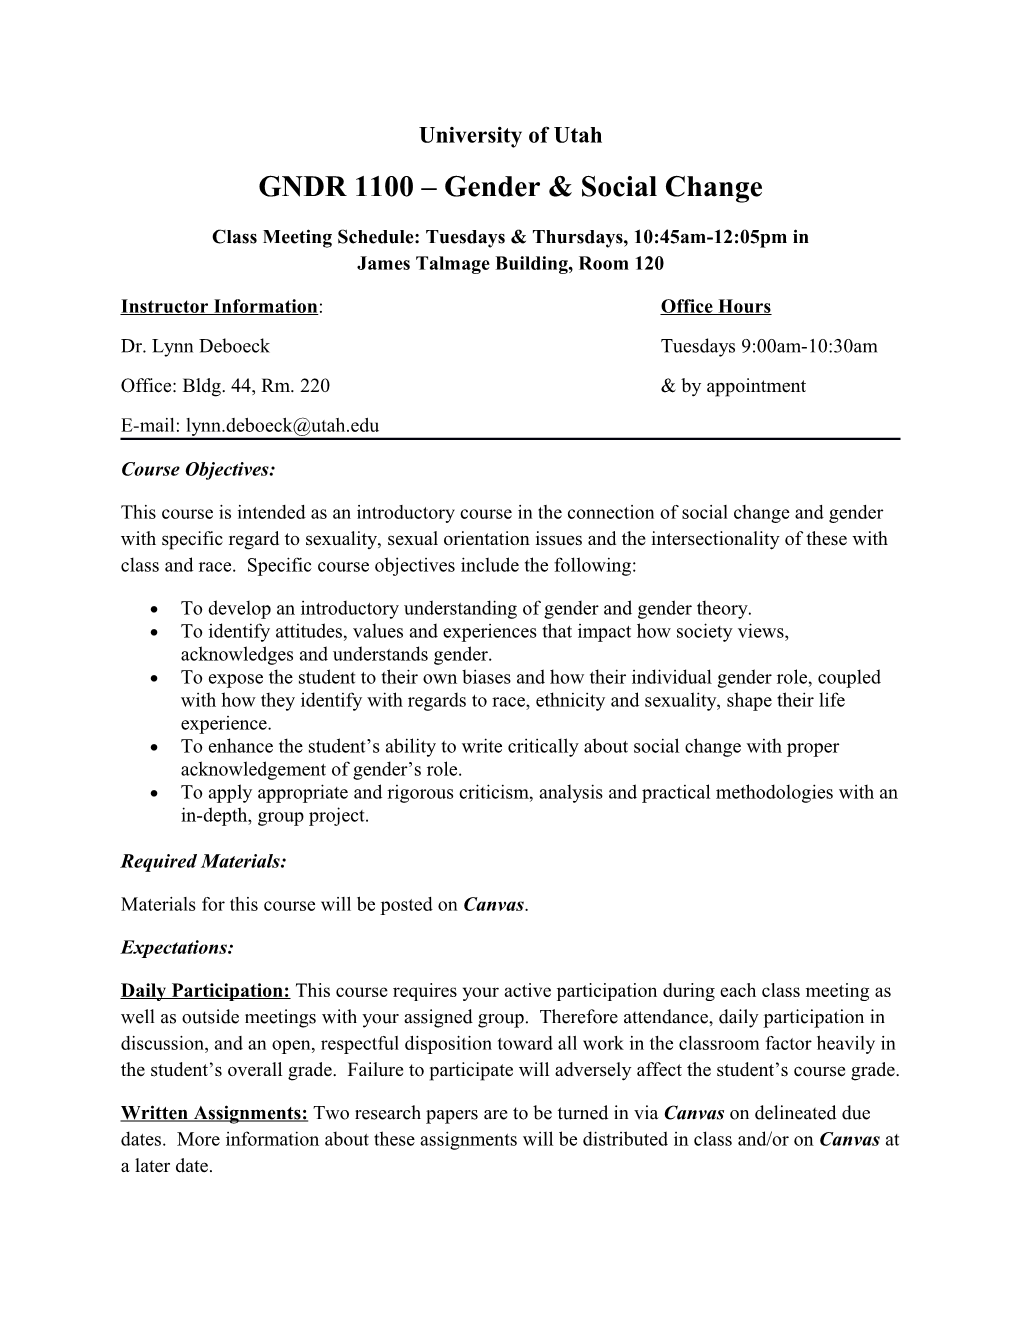 GNDR 1100 Gender & Social Change